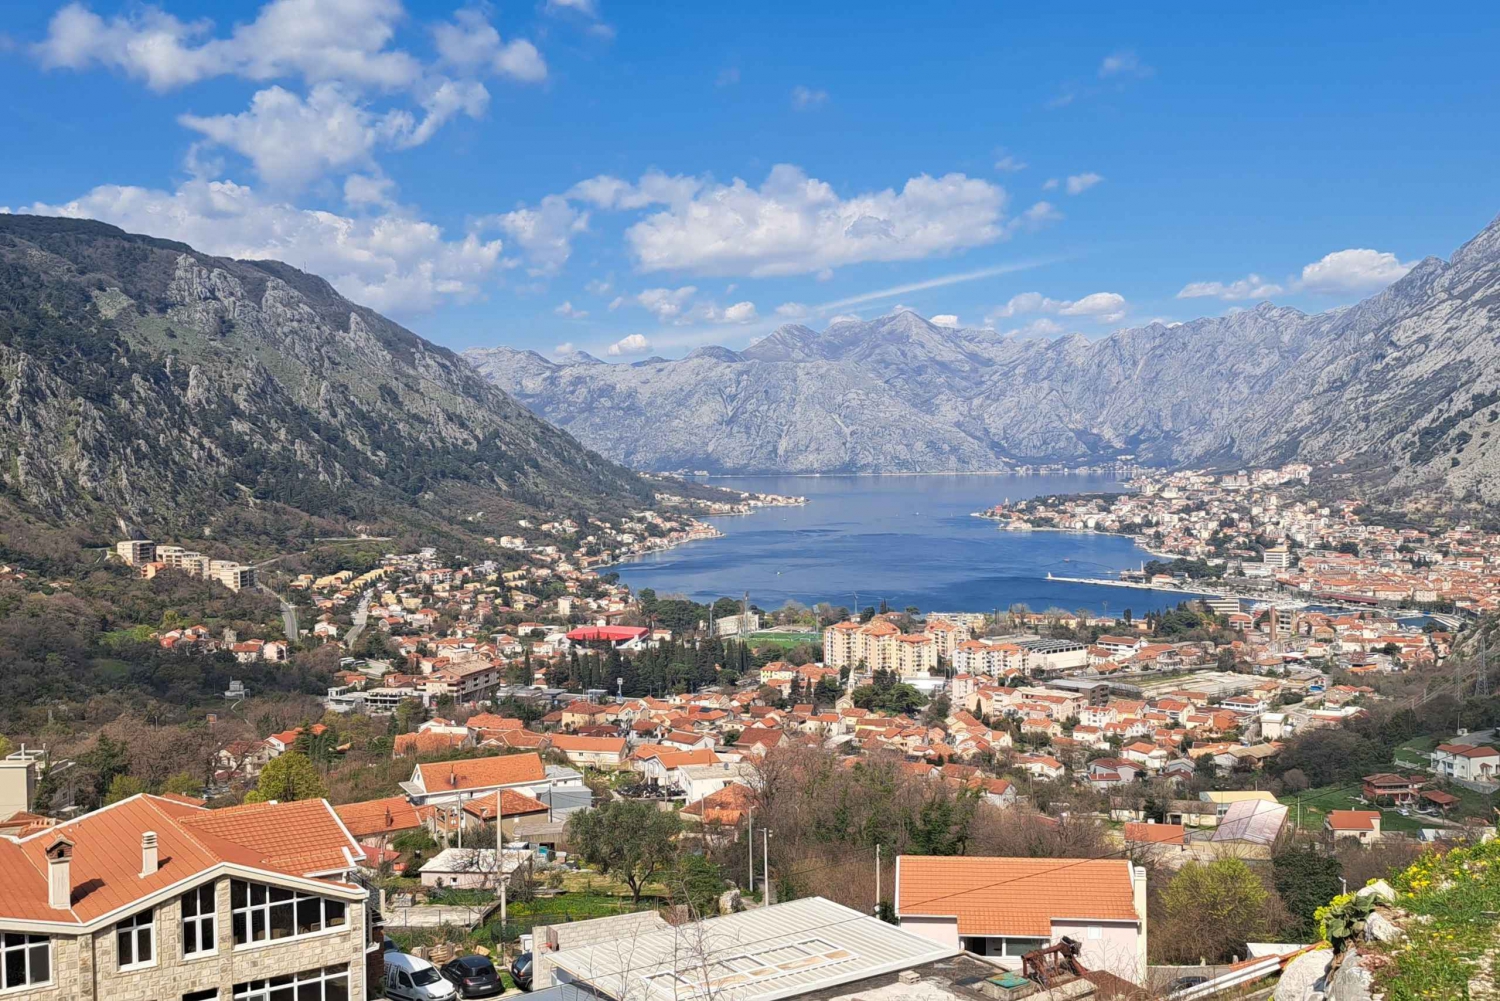 Czarnogóra z Dubrownika odwiedzającego Perast, Kotor i Budvę